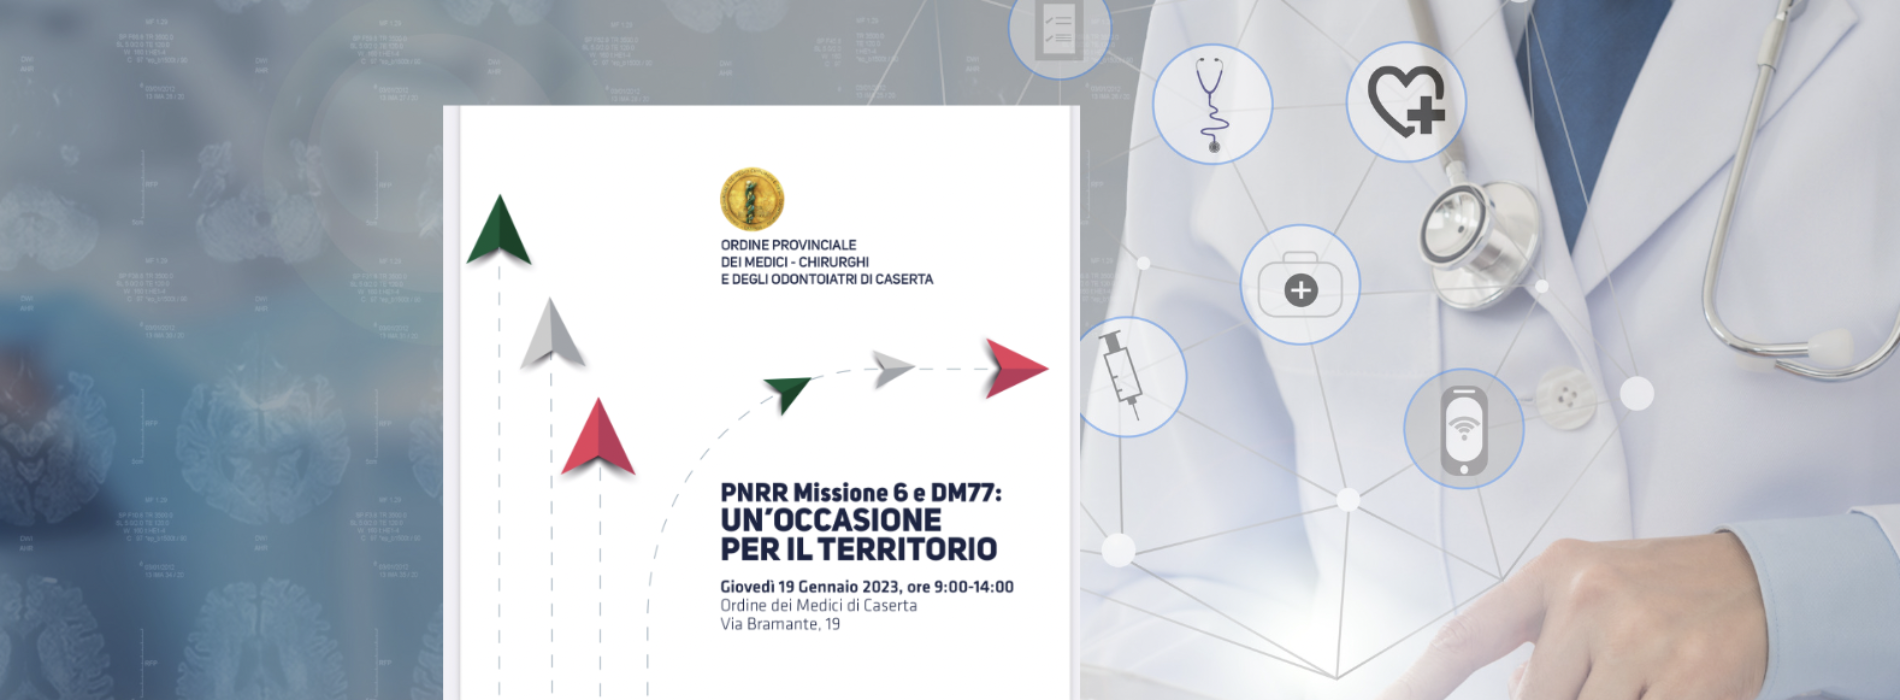 PNRR Missione 6 e DM77. L’evento all’Ordine Medici Caserta